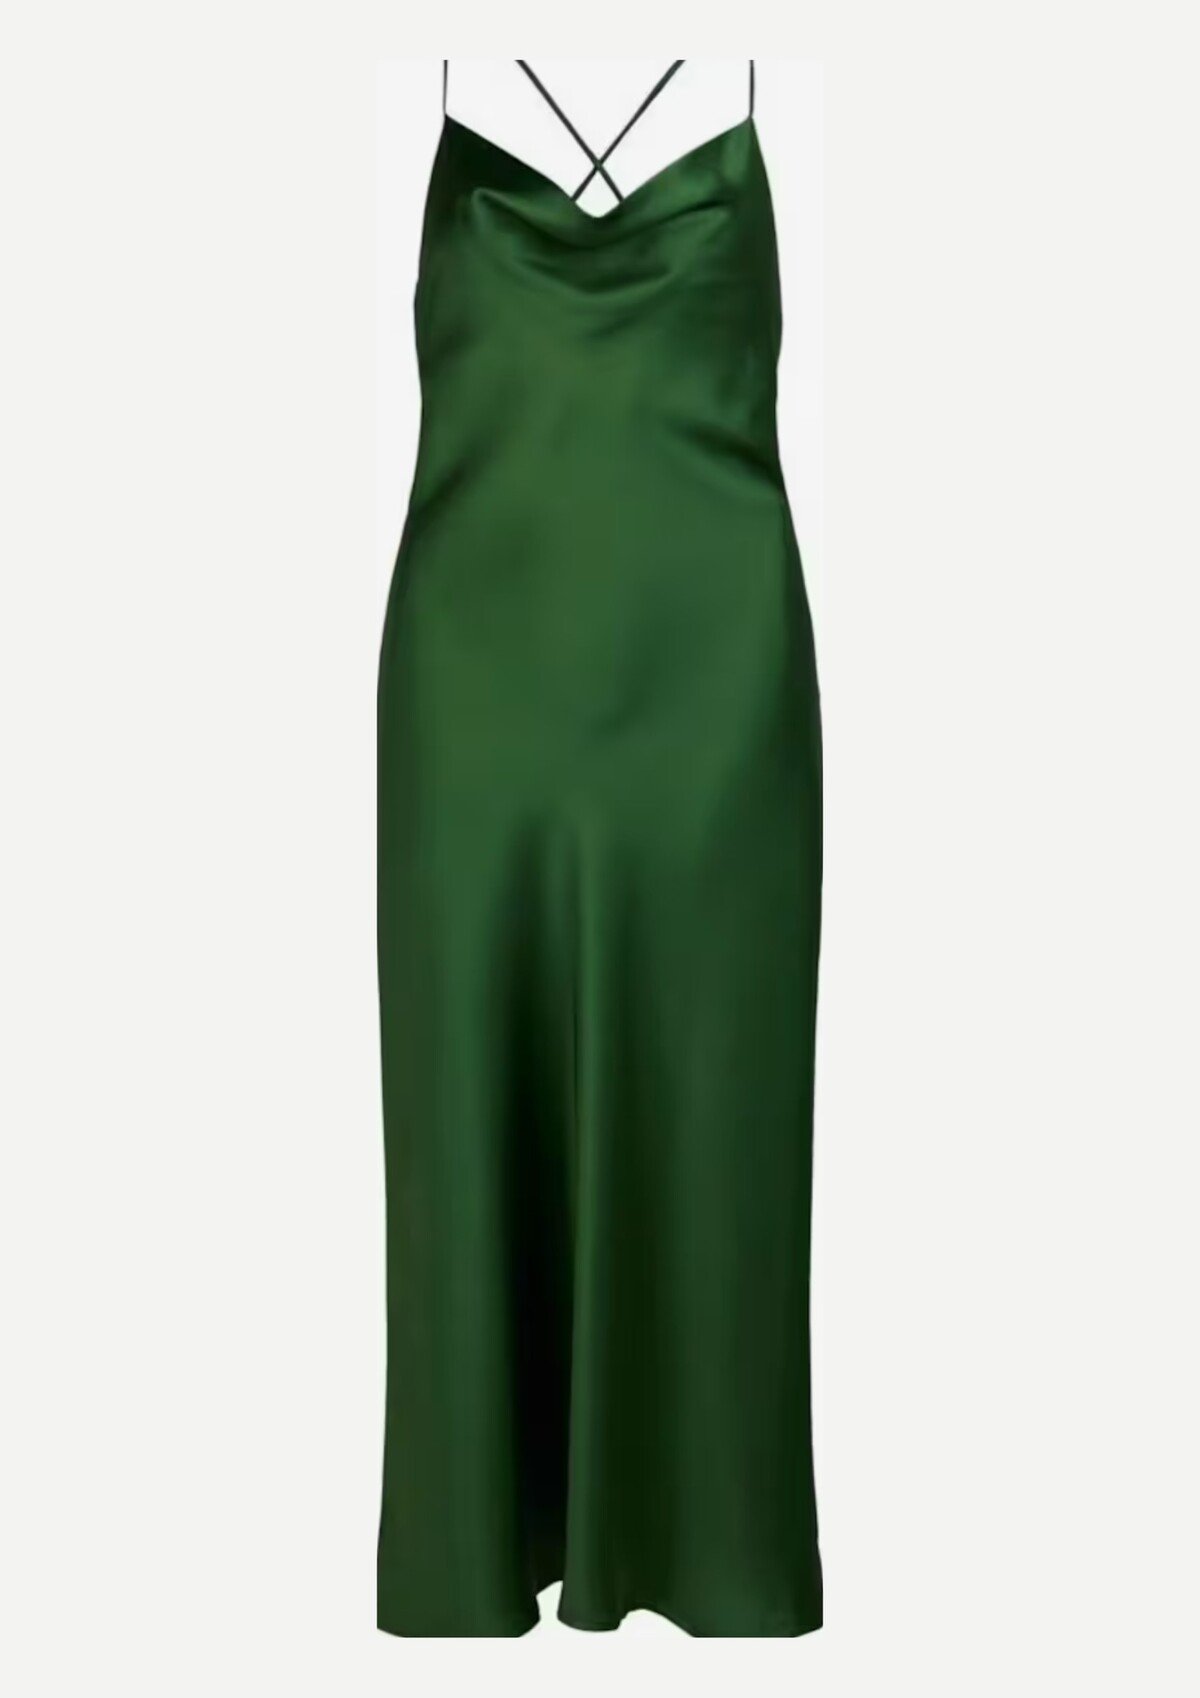 Zelené saténové šaty OBJECT za 44,90 eur sú skvelou voľbou pre všetkých, ktorým sa hodí jesenná farebná paleta.
